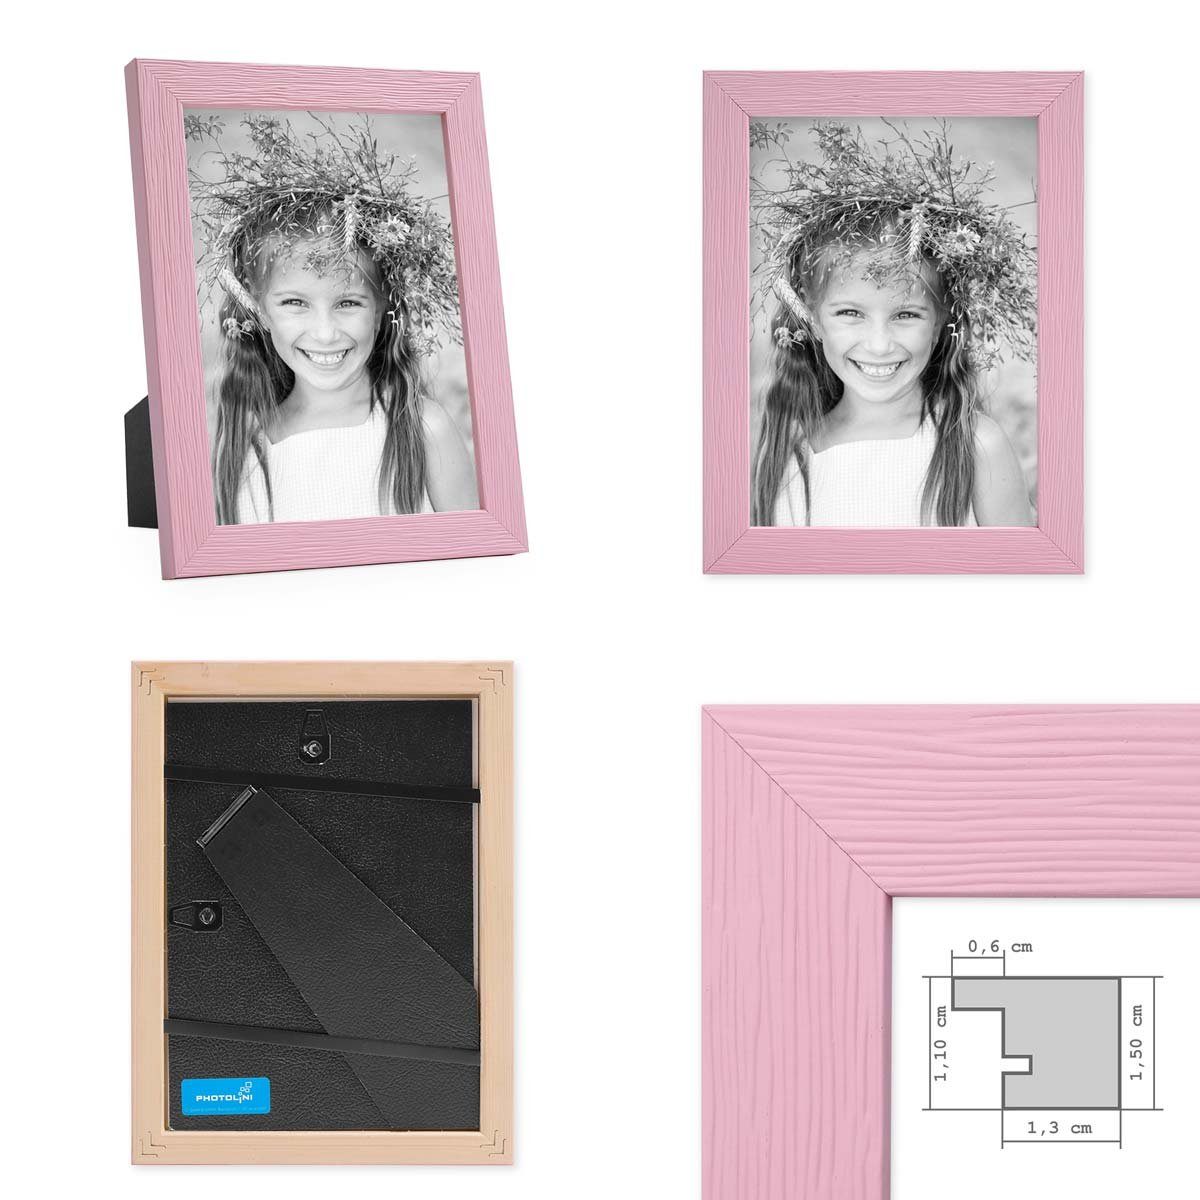 3er Massivholz-Rahmen Rosa Set bunten Bilderrahmen PHOTOLINI Regenbogenfarben - in